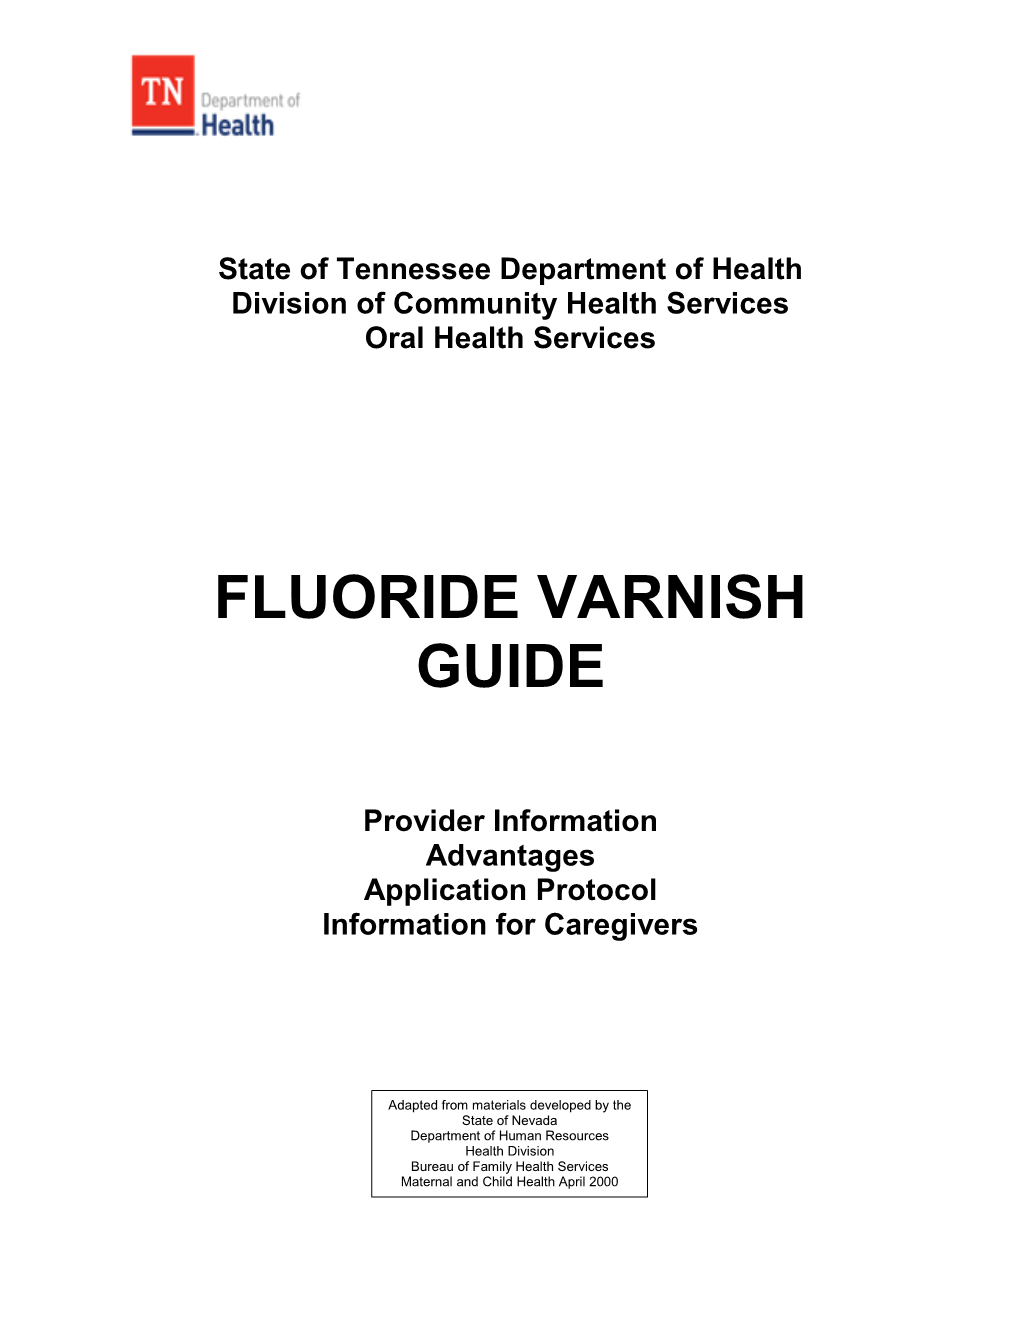 Dental Fluoride Varnish Guide 2017